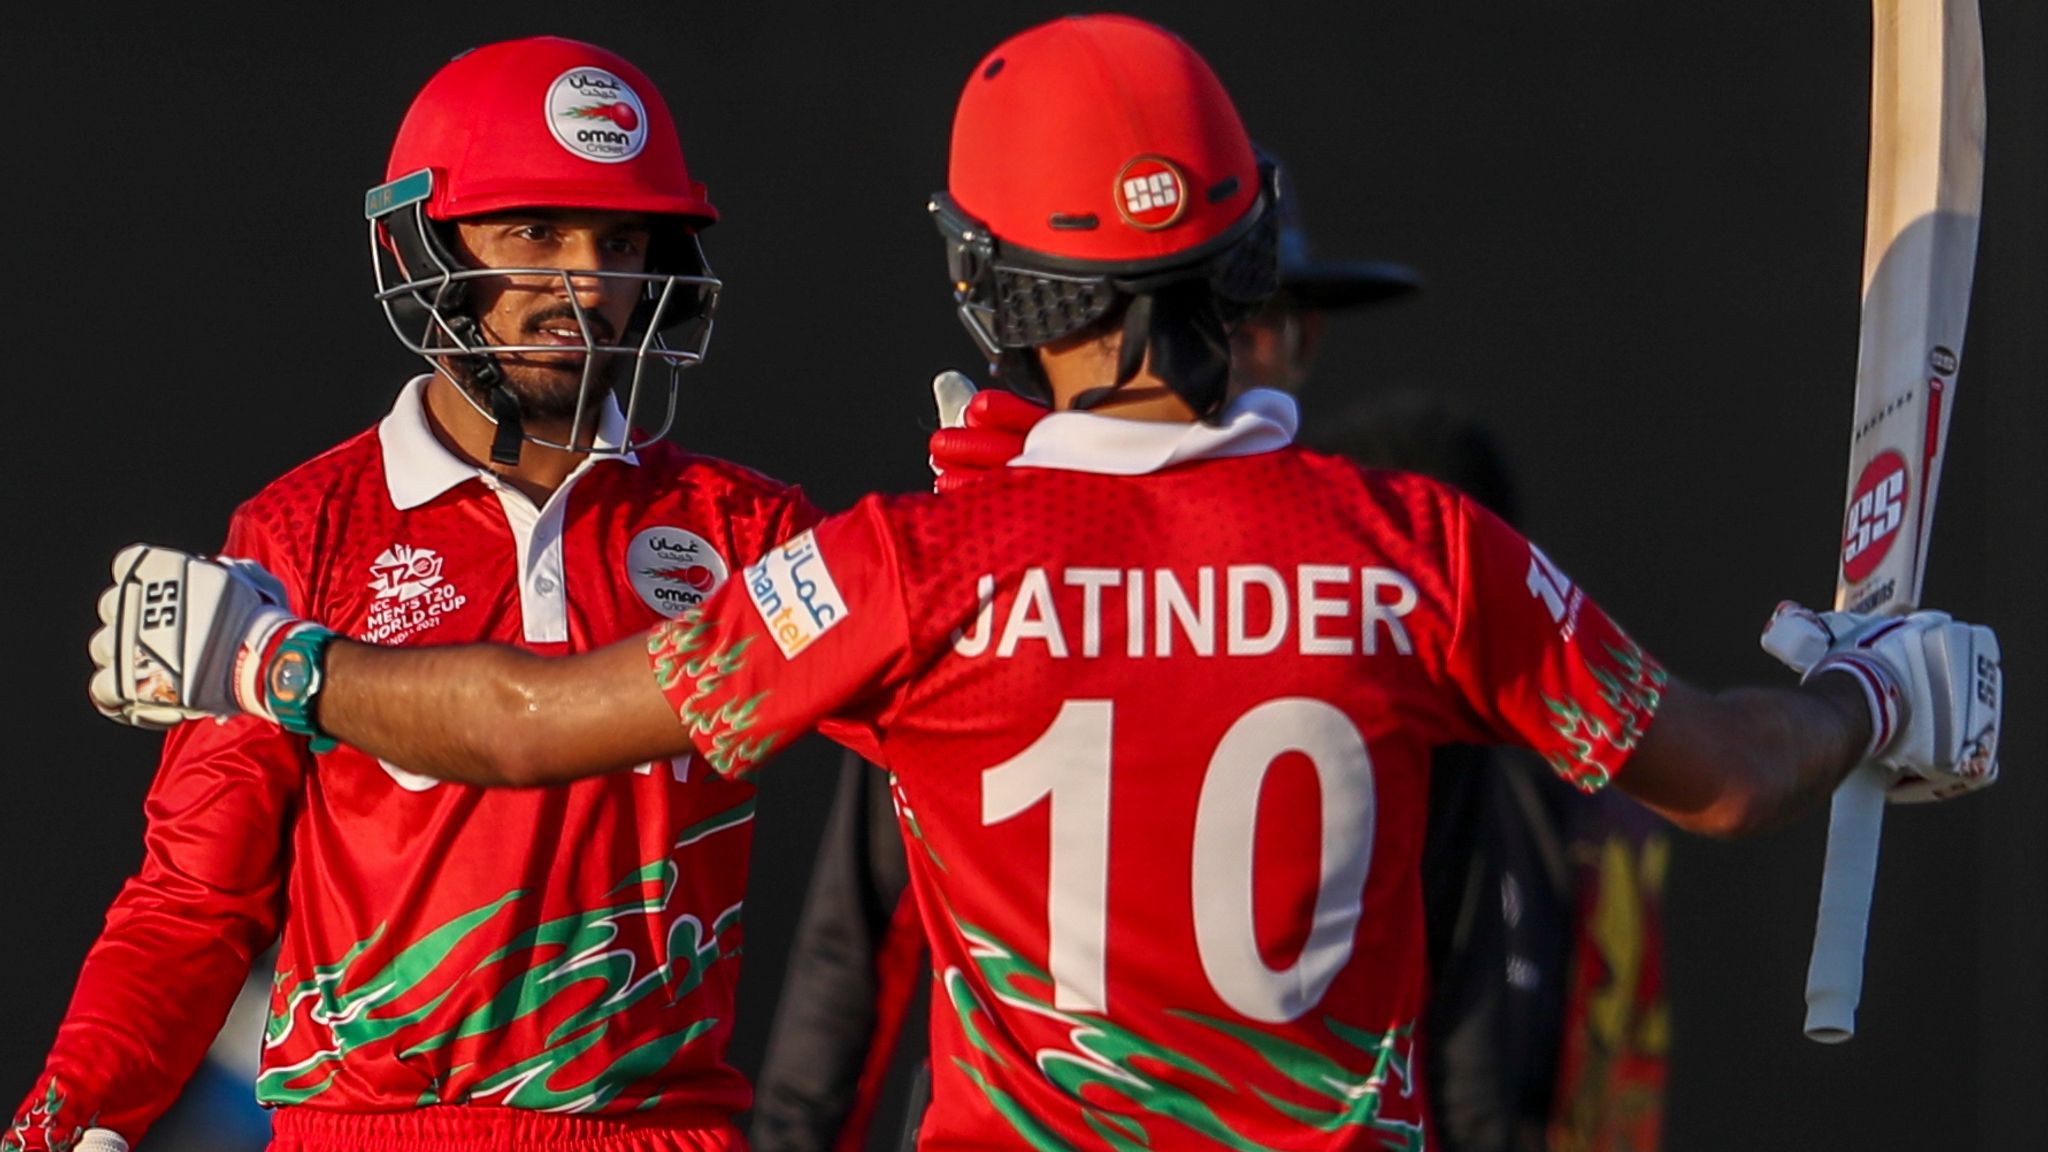 Origine indiana | Jatinder Singh | Giocatore di cricket dell'Oman | Indiano globale